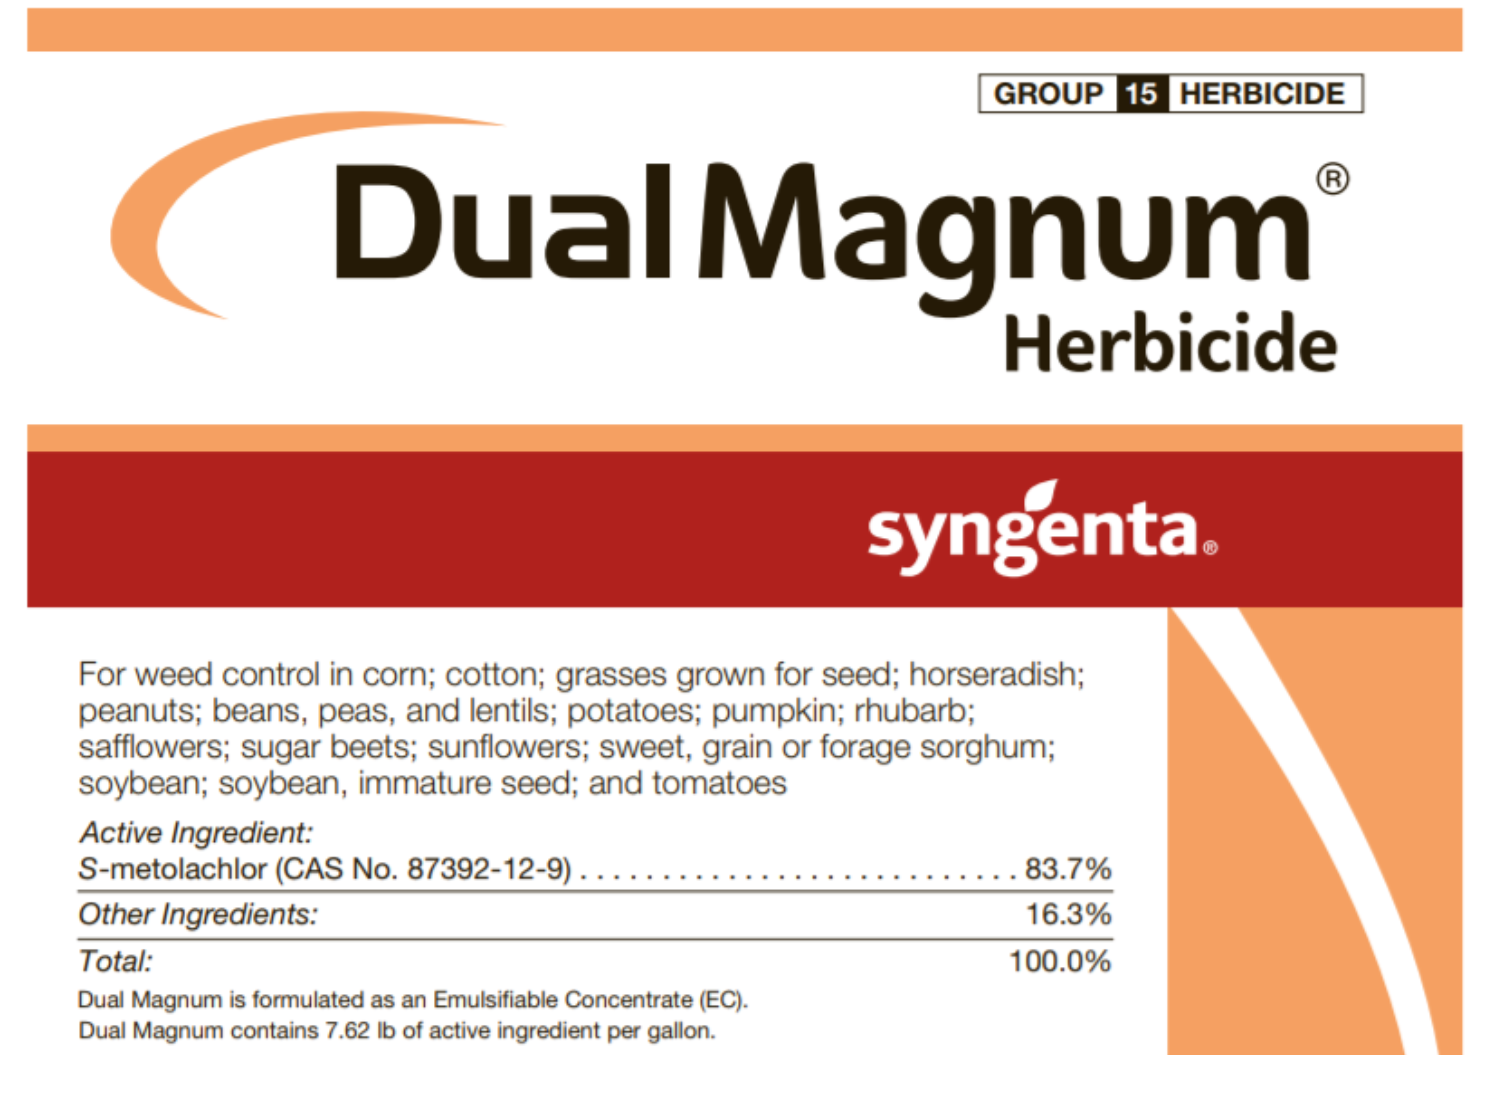 Dual Magnum Herbicides.